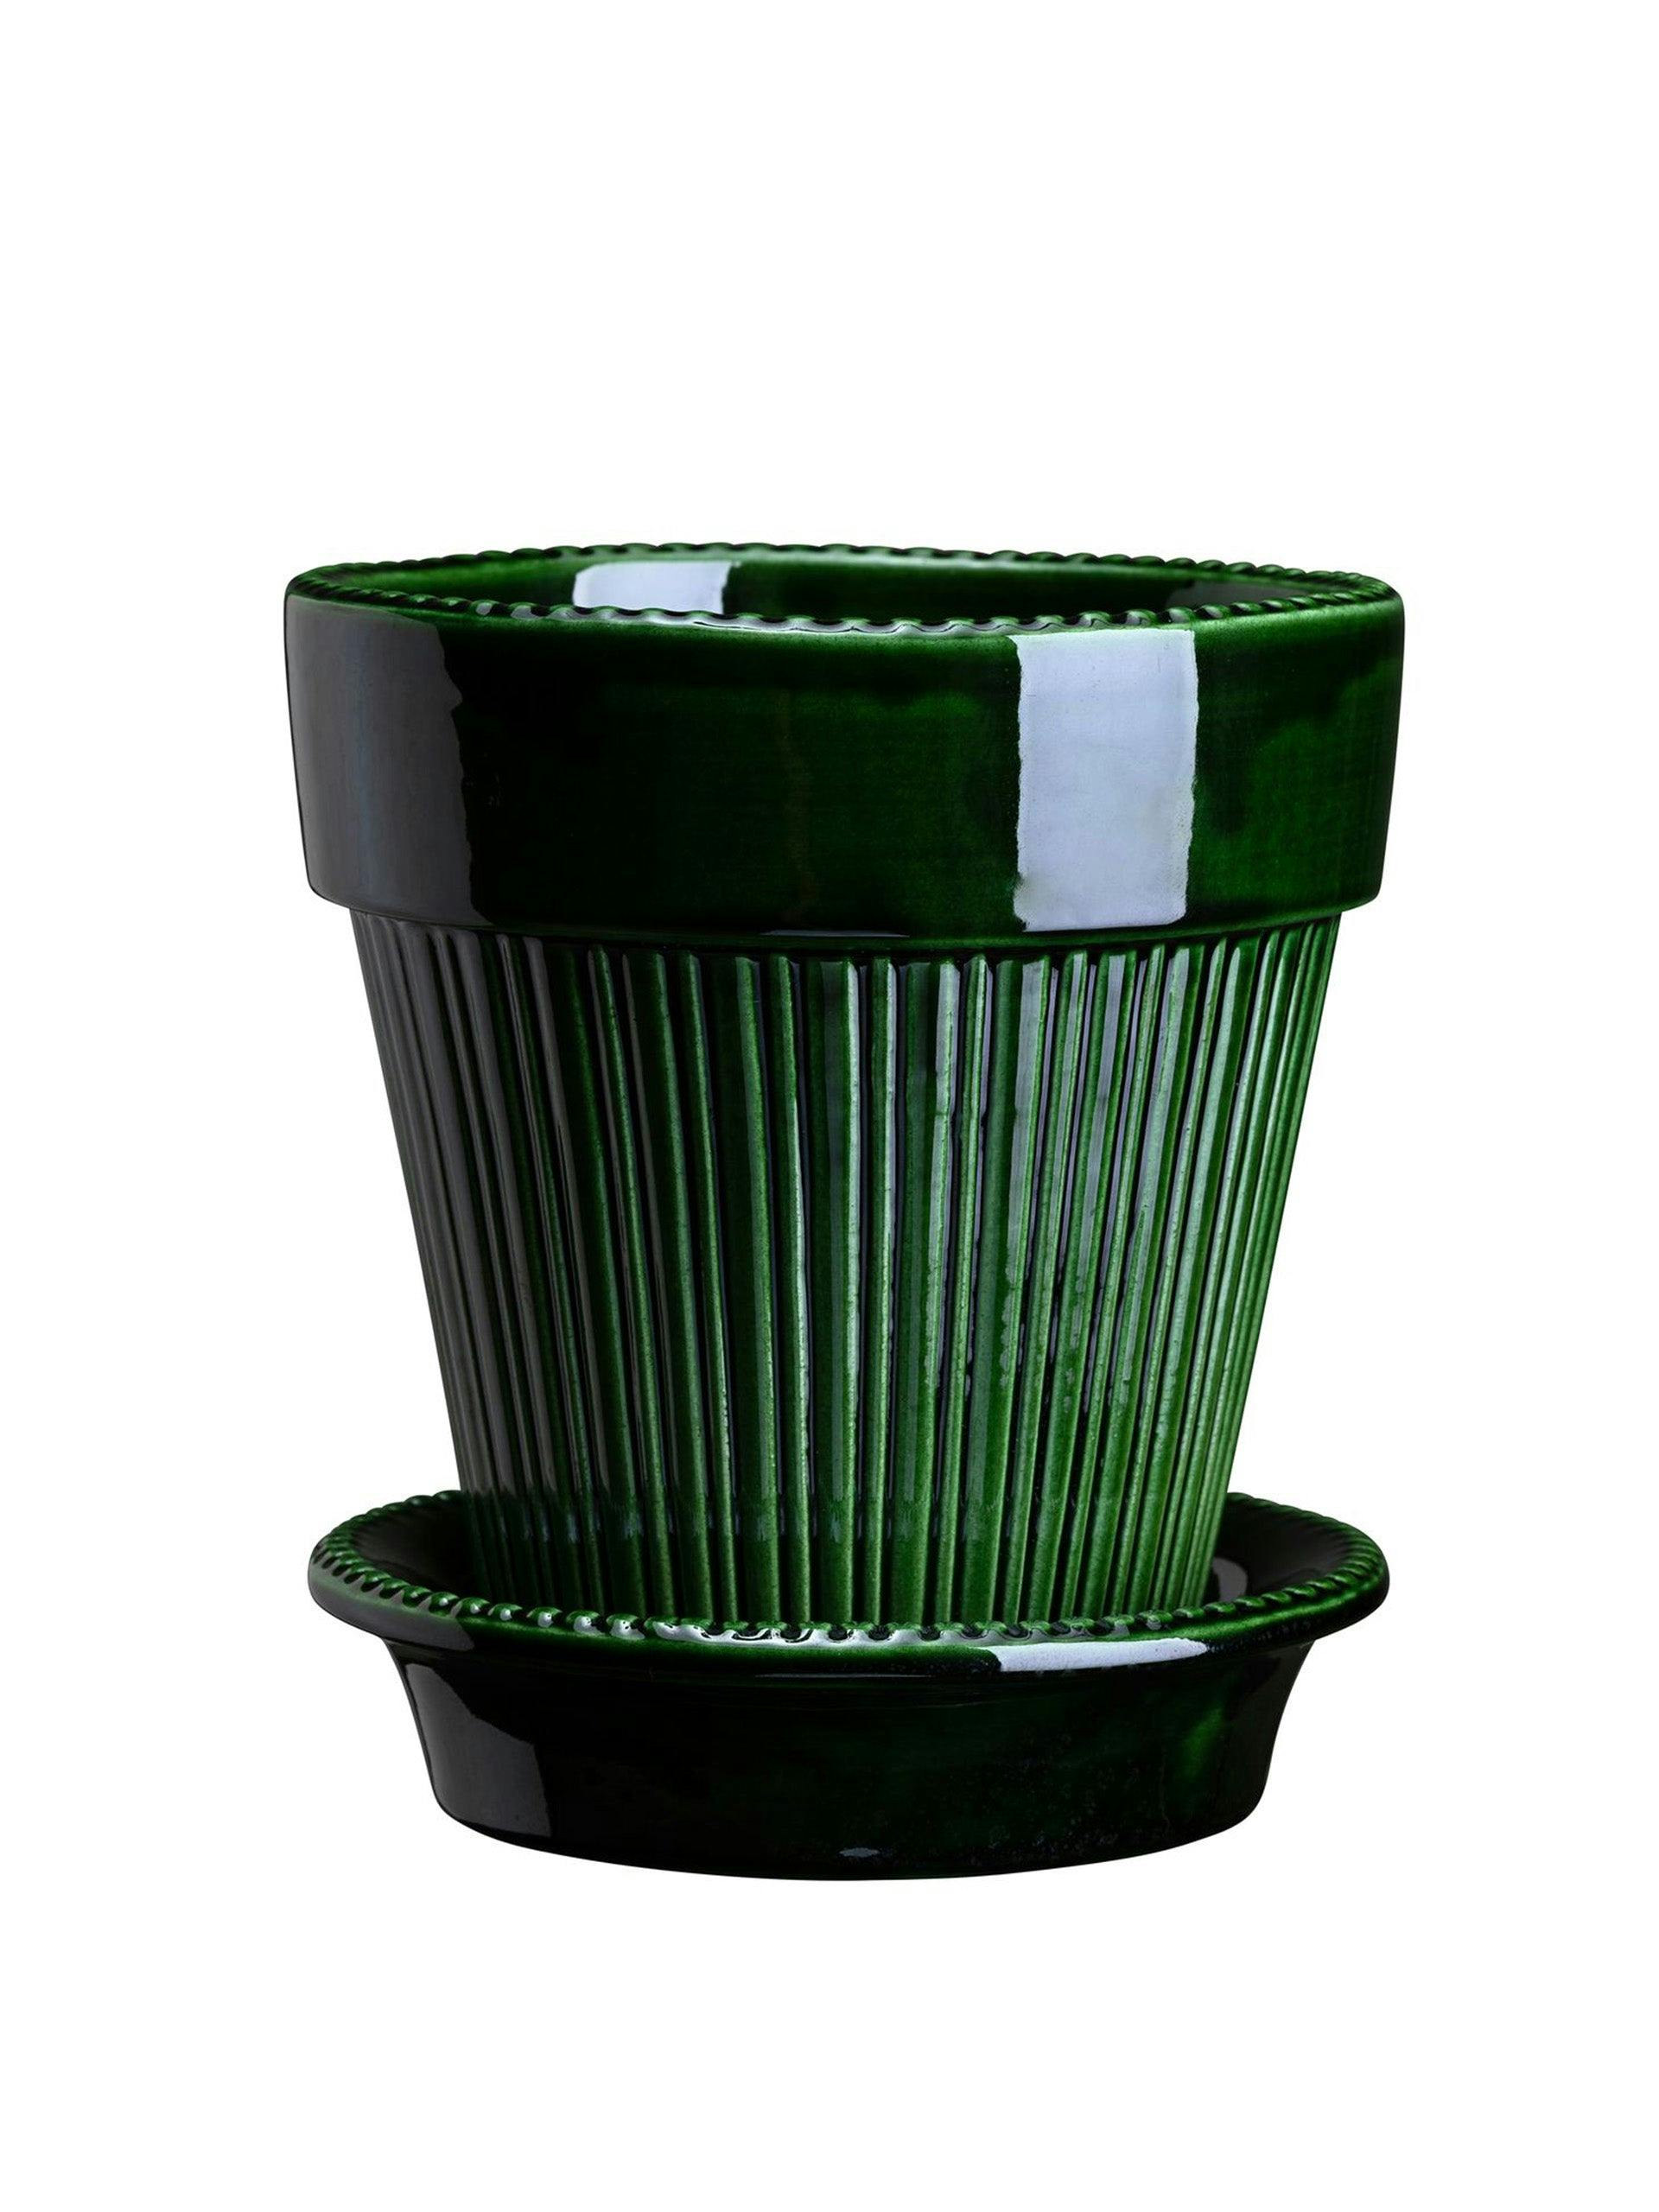 Green glazed flower pot